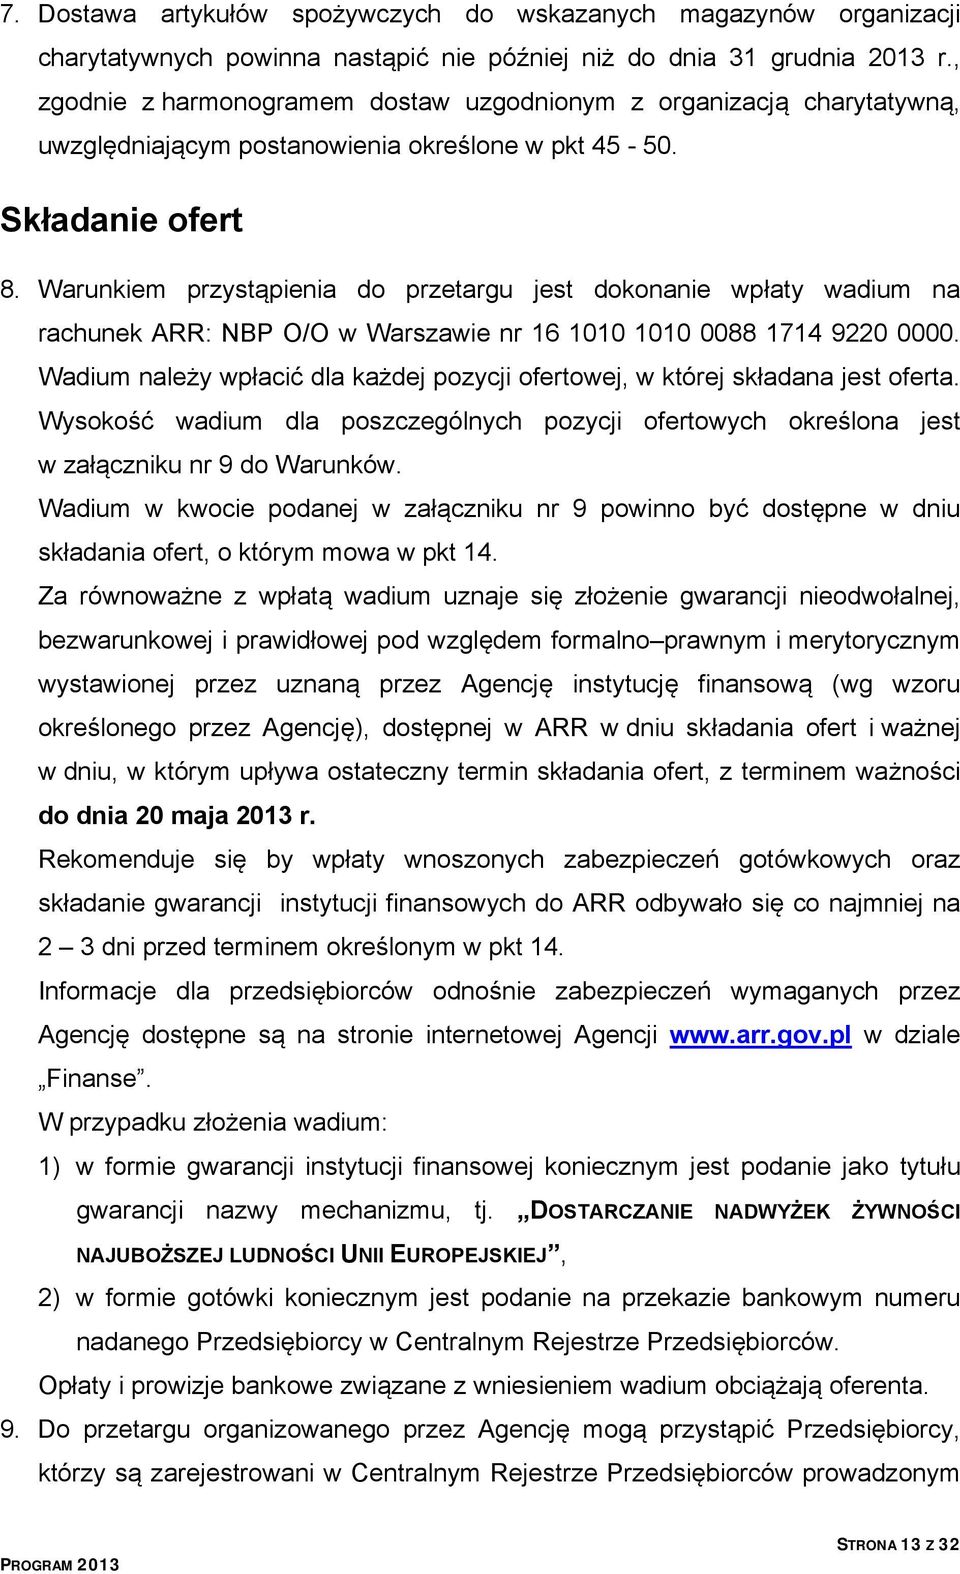 Warunkiem przystąpienia do przetargu jest dokonanie wpłaty wadium na rachunek ARR: NBP O/O w Warszawie nr 16 1010 1010 0088 1714 9220 0000.